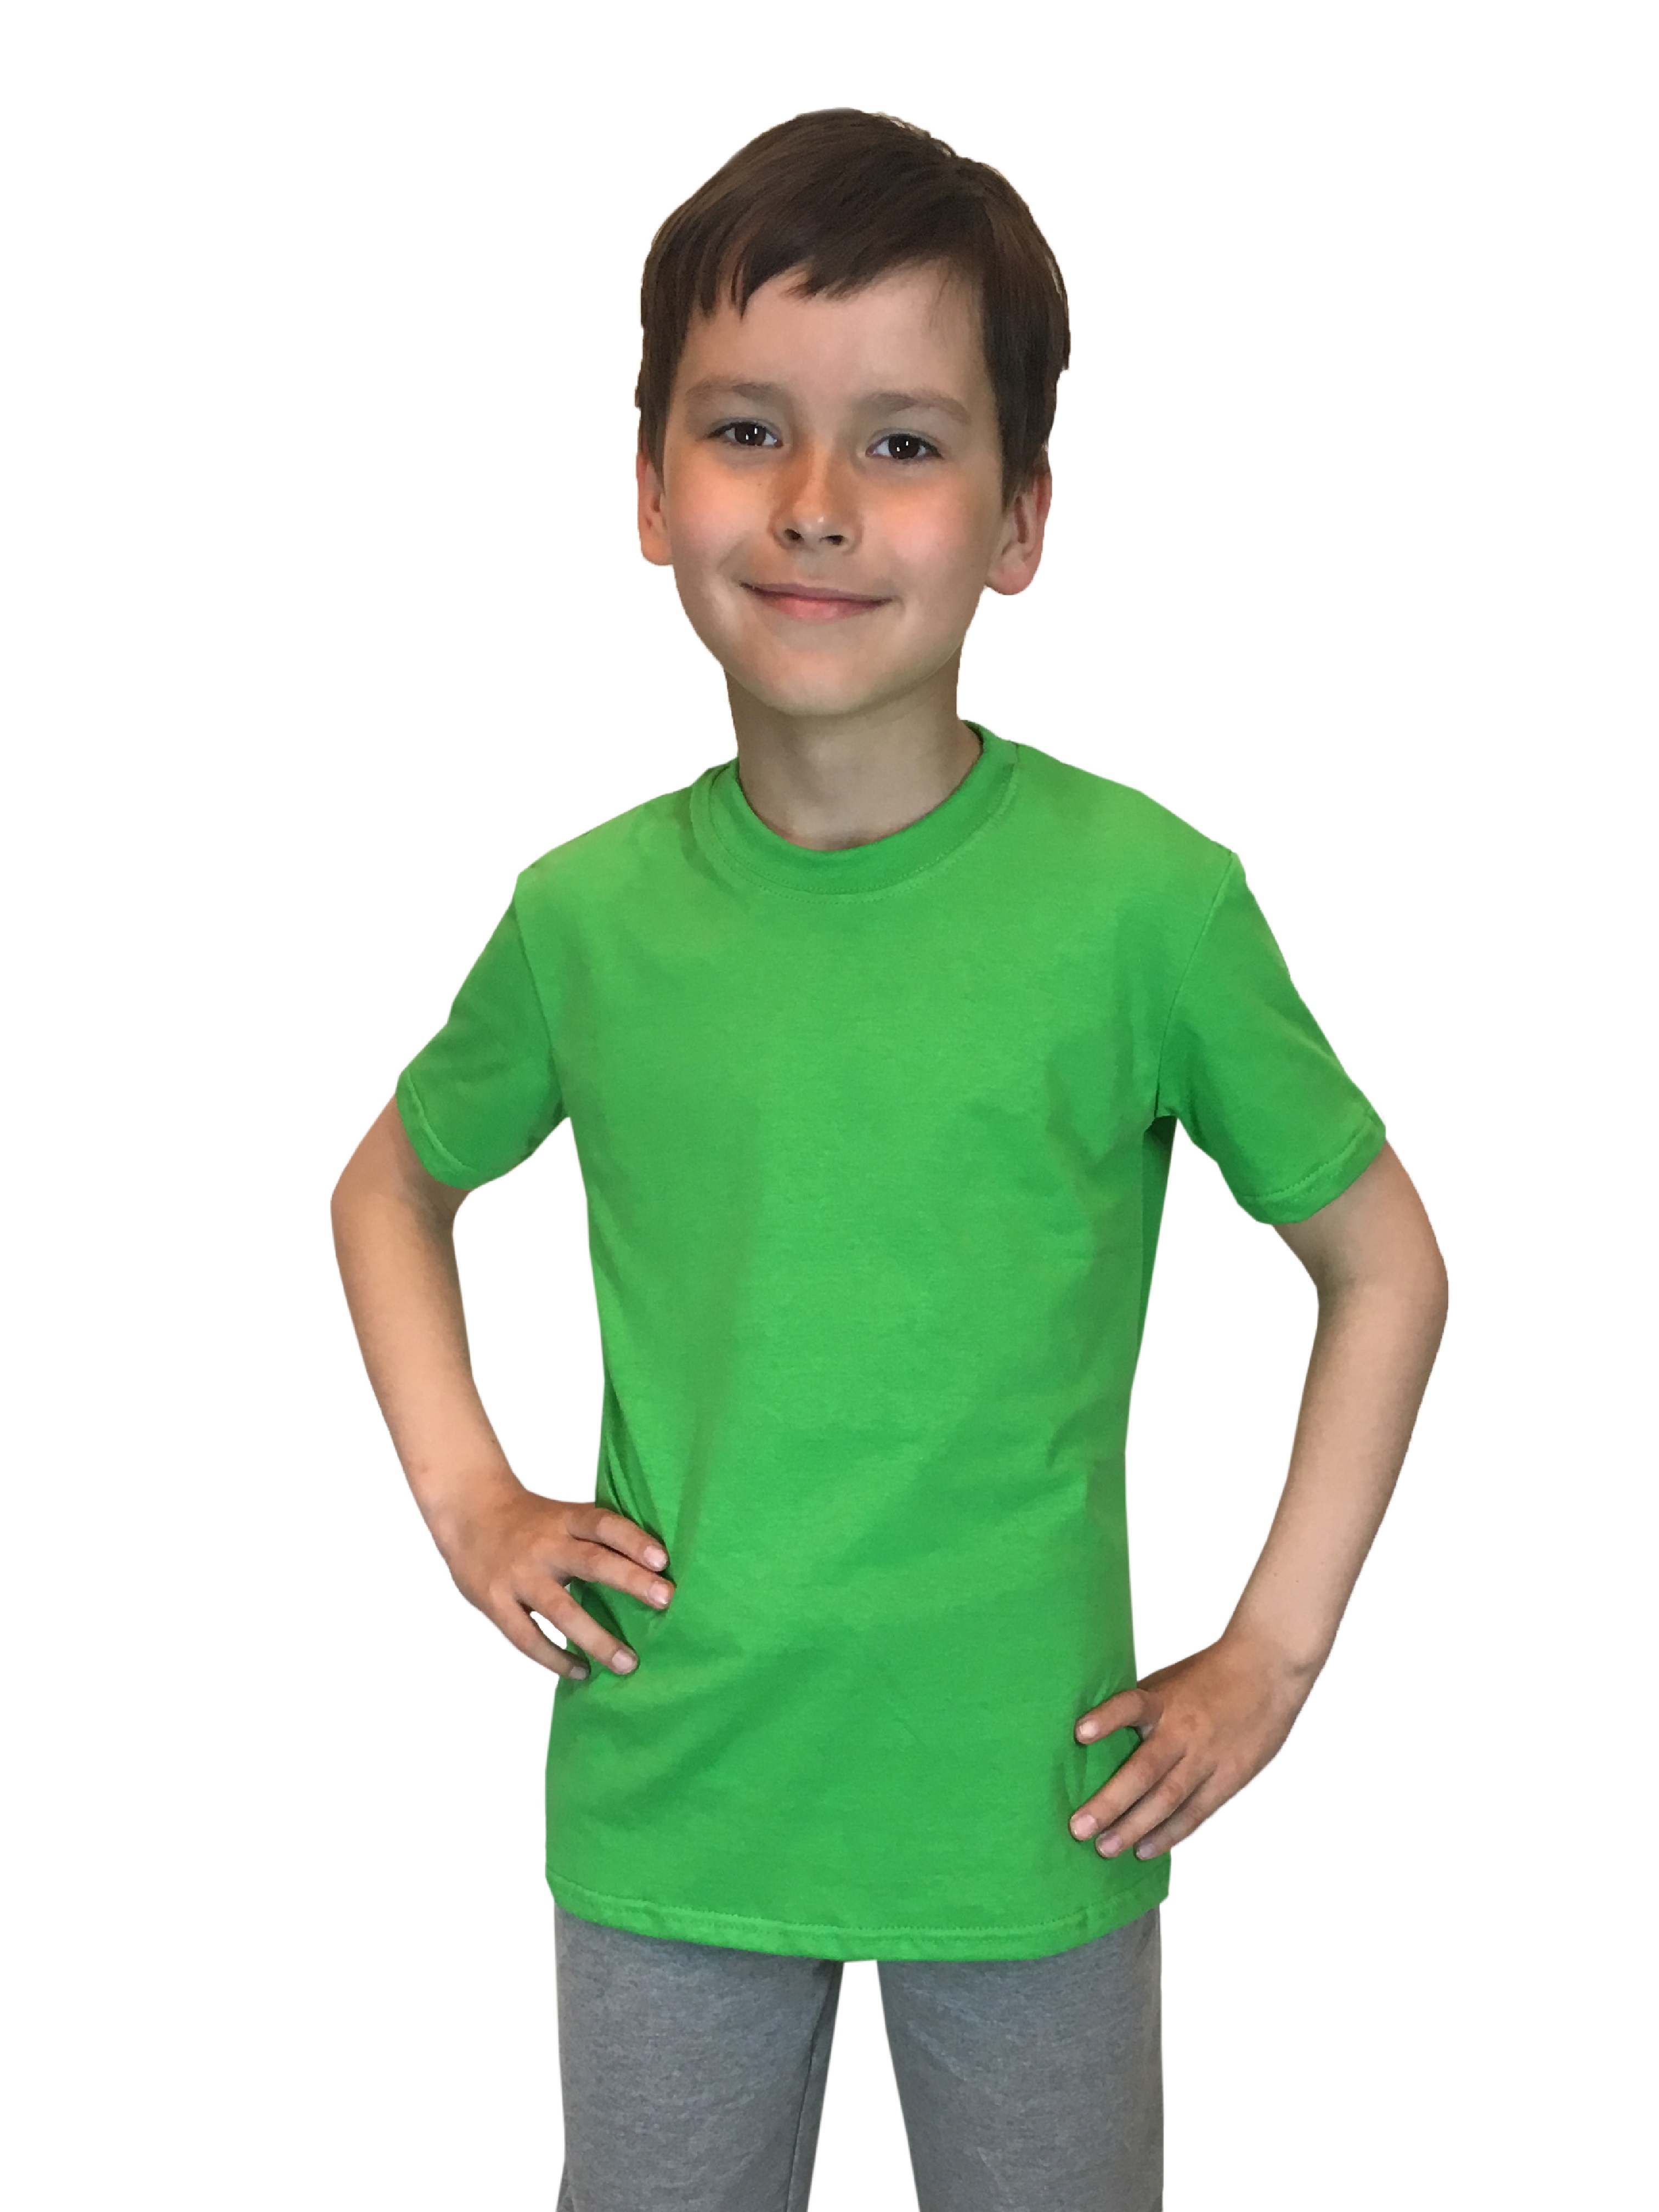 Футболка детская Детрик, зеленый размер 140, Ф-1-69